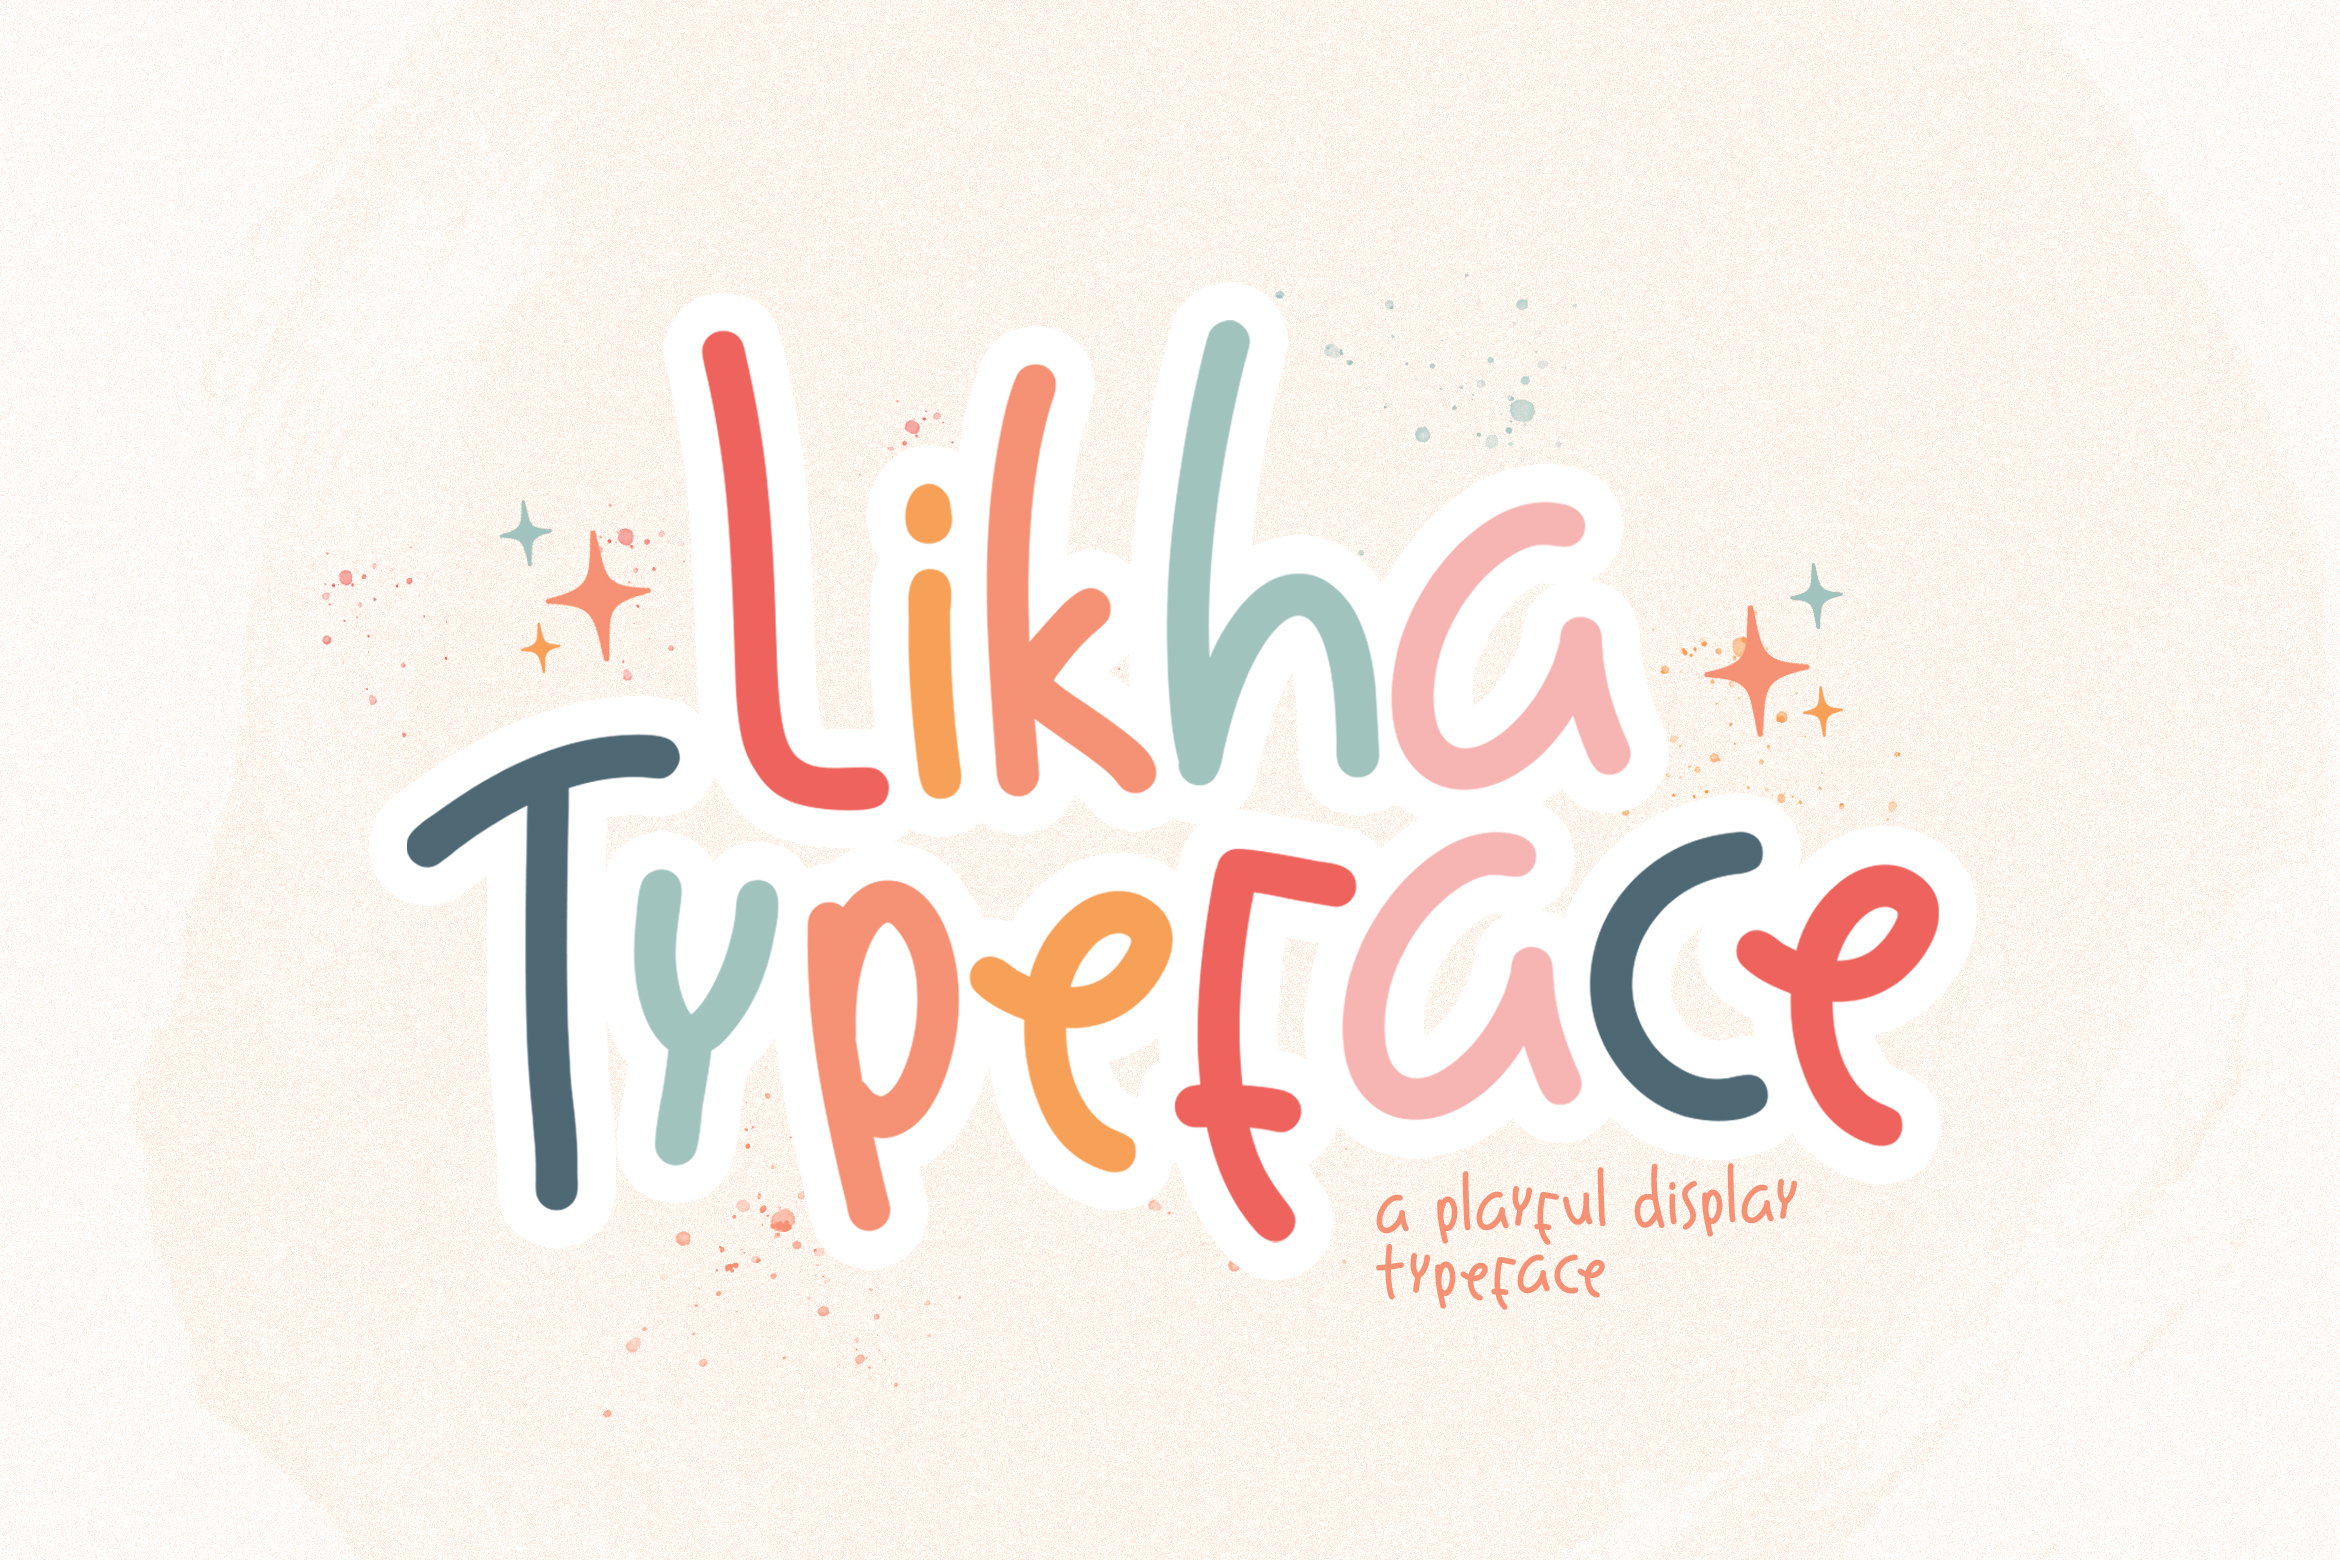 Likha Playful Display Typeface